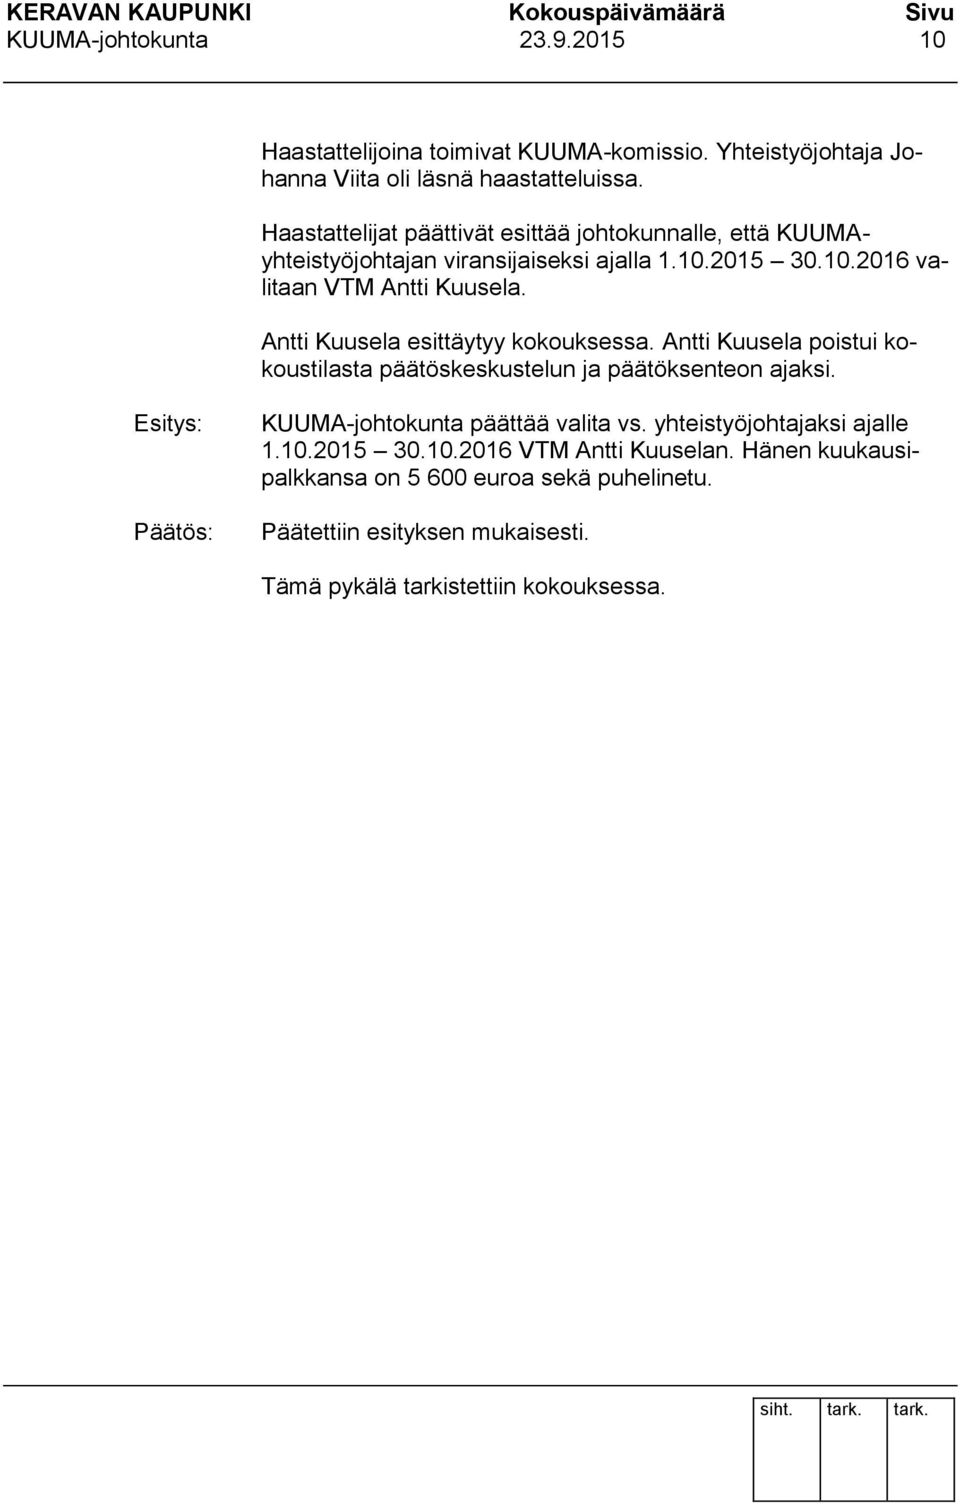 Antti Kuusela esittäytyy kokouksessa. Antti Kuusela poistui kokoustilasta päätöskeskustelun ja päätöksenteon ajaksi.